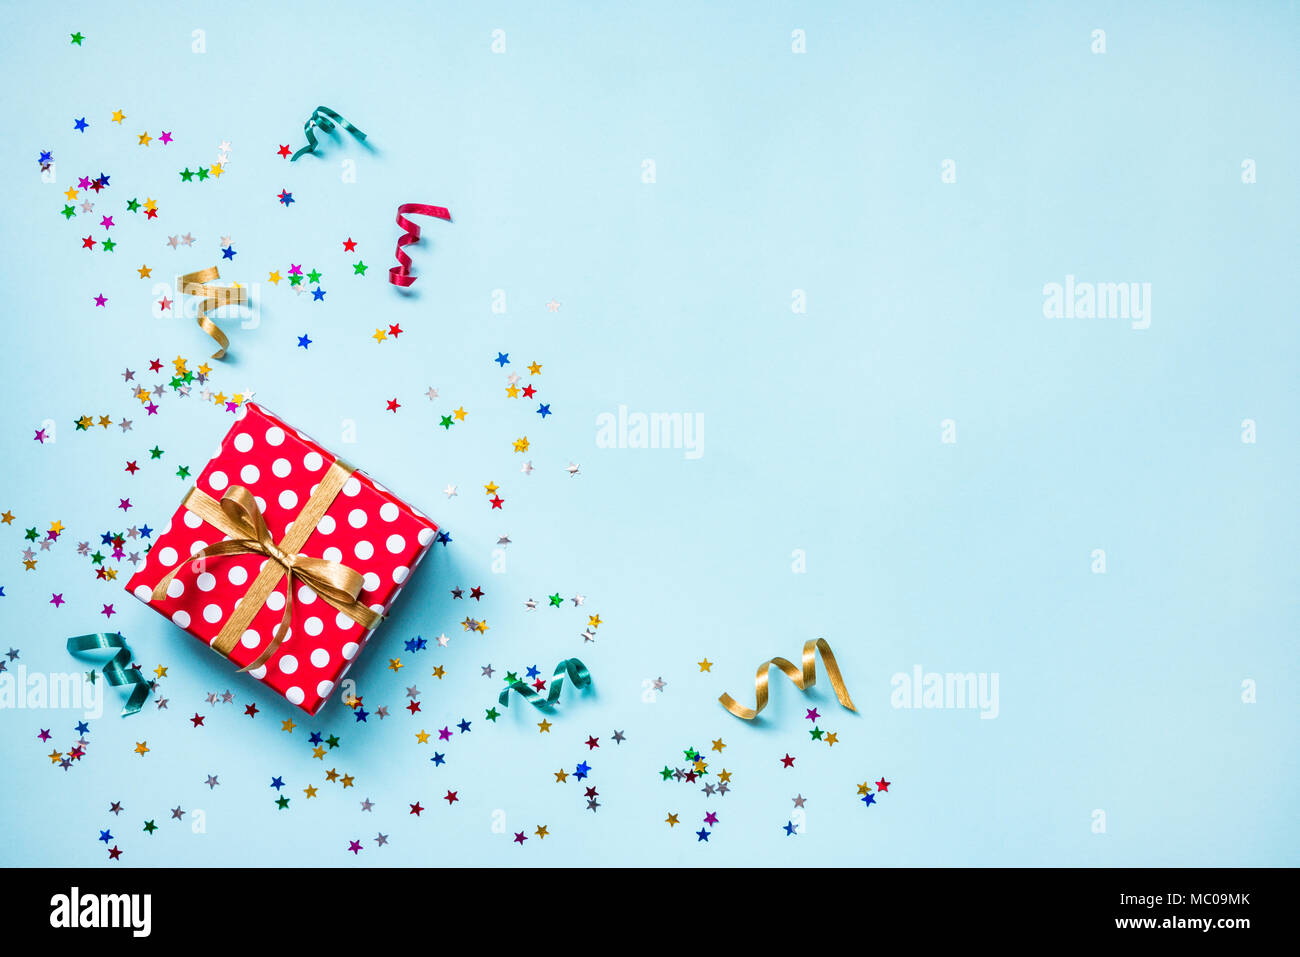 Vue de dessus d'une boîte cadeau rouge en pointillés, dispersés en forme de confettis étoile scintillante et rubans colorés sur fond bleu. Concept de célébration. Savs copie Banque D'Images